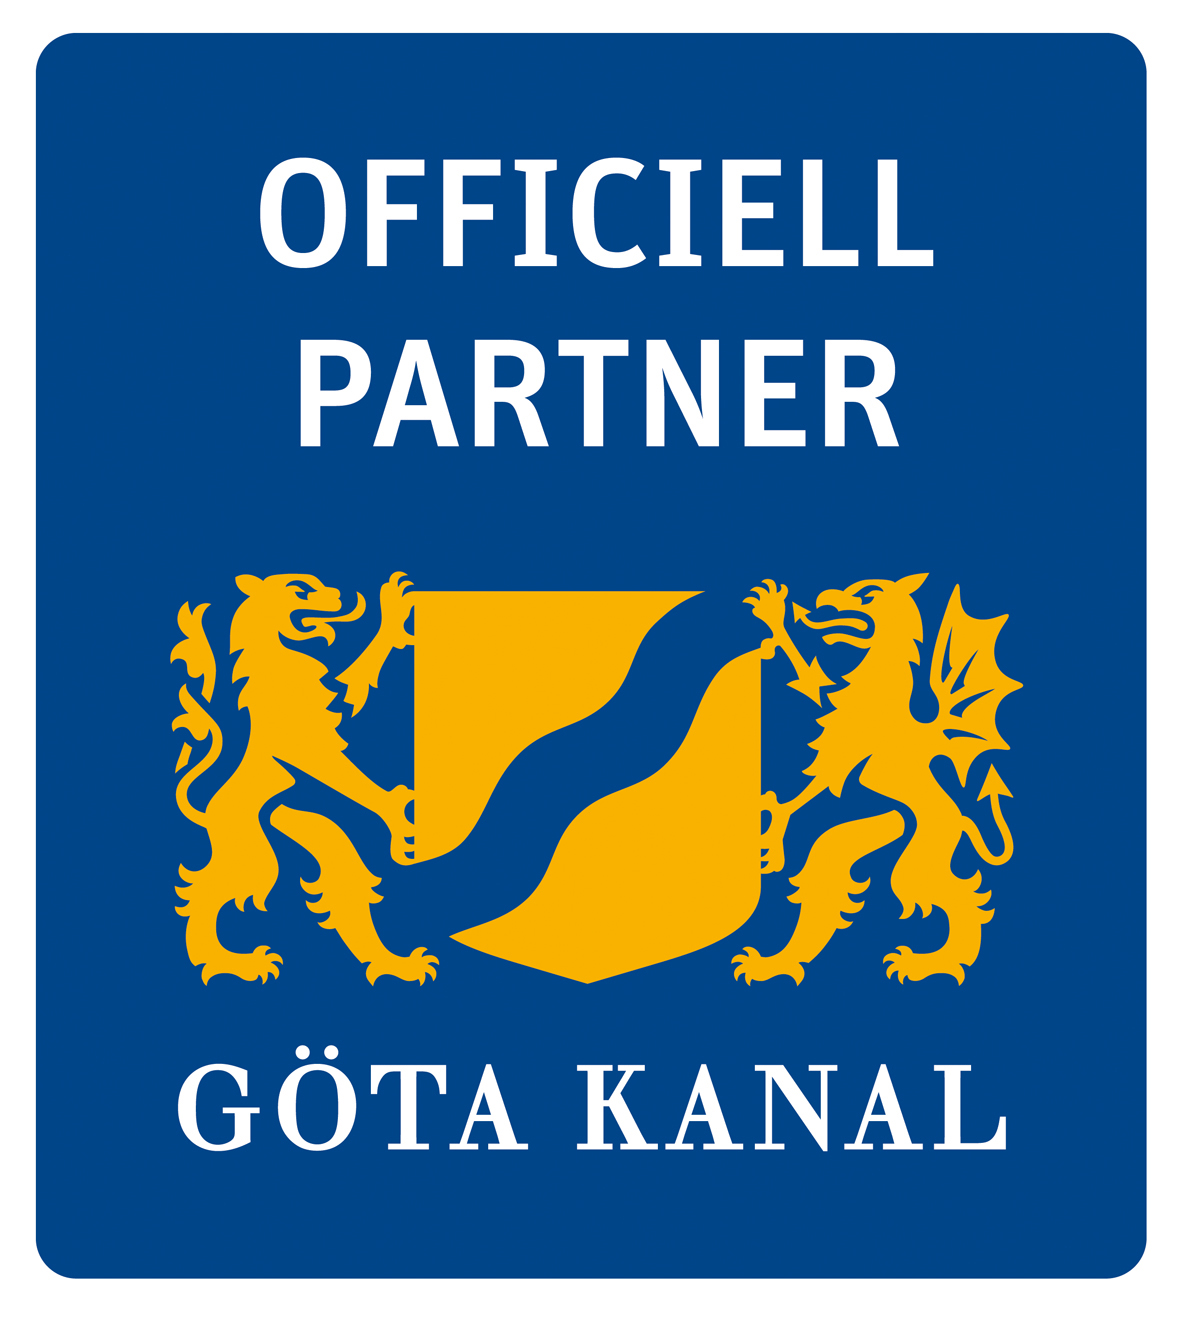 Officiell partner Göta kanal